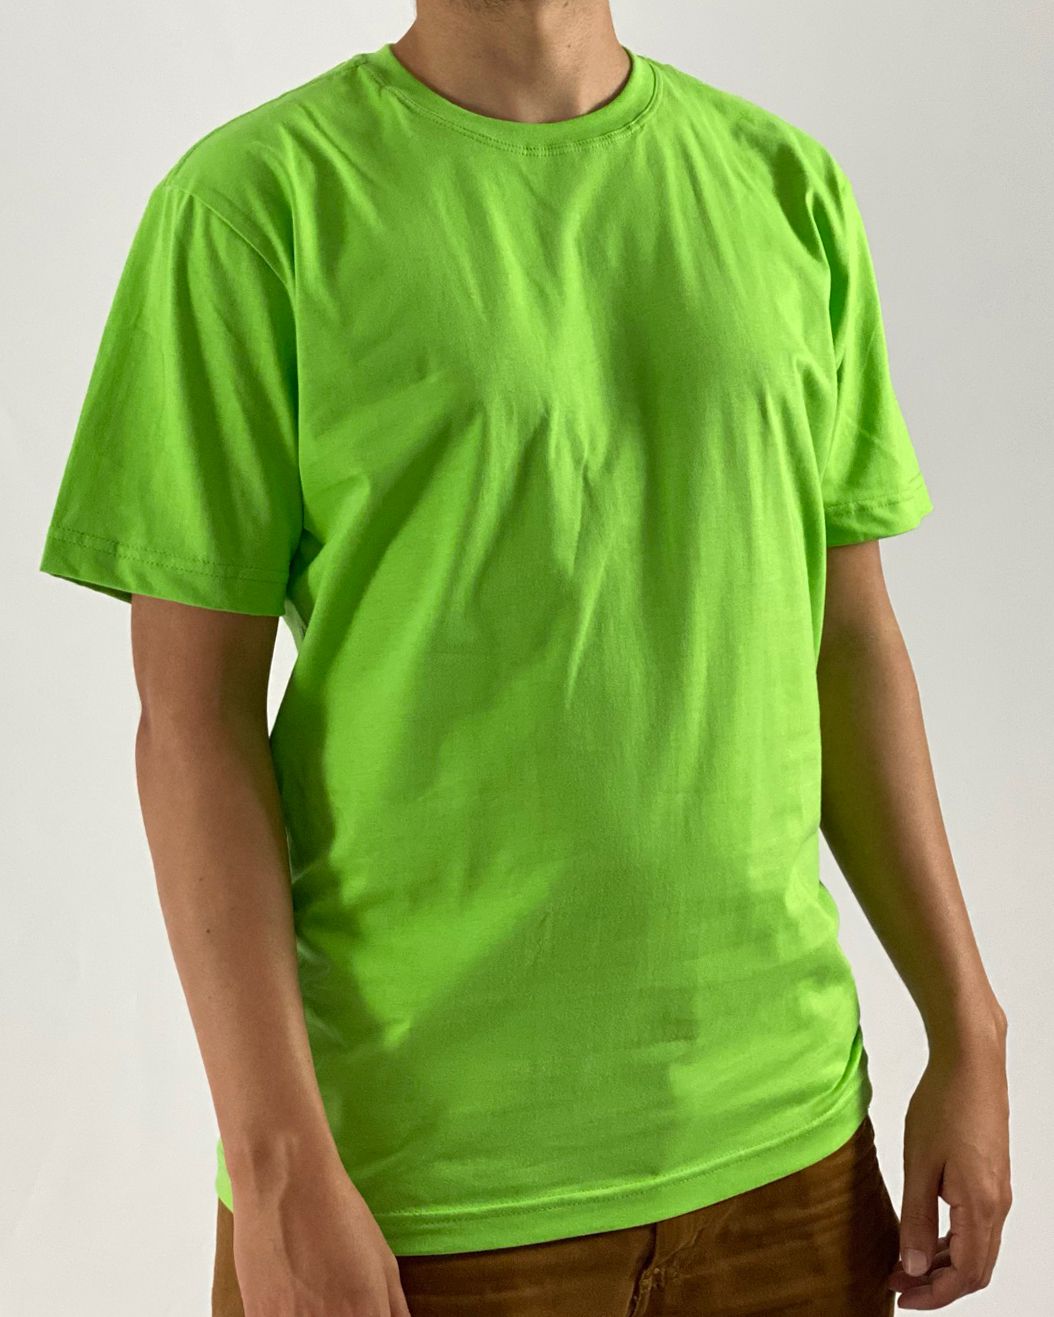 Camiseta Verde Musgo, 100% Poliéster - Fábrica de Camisetas Em Curitiba -  (41) 3286-1158 - Empório da Família